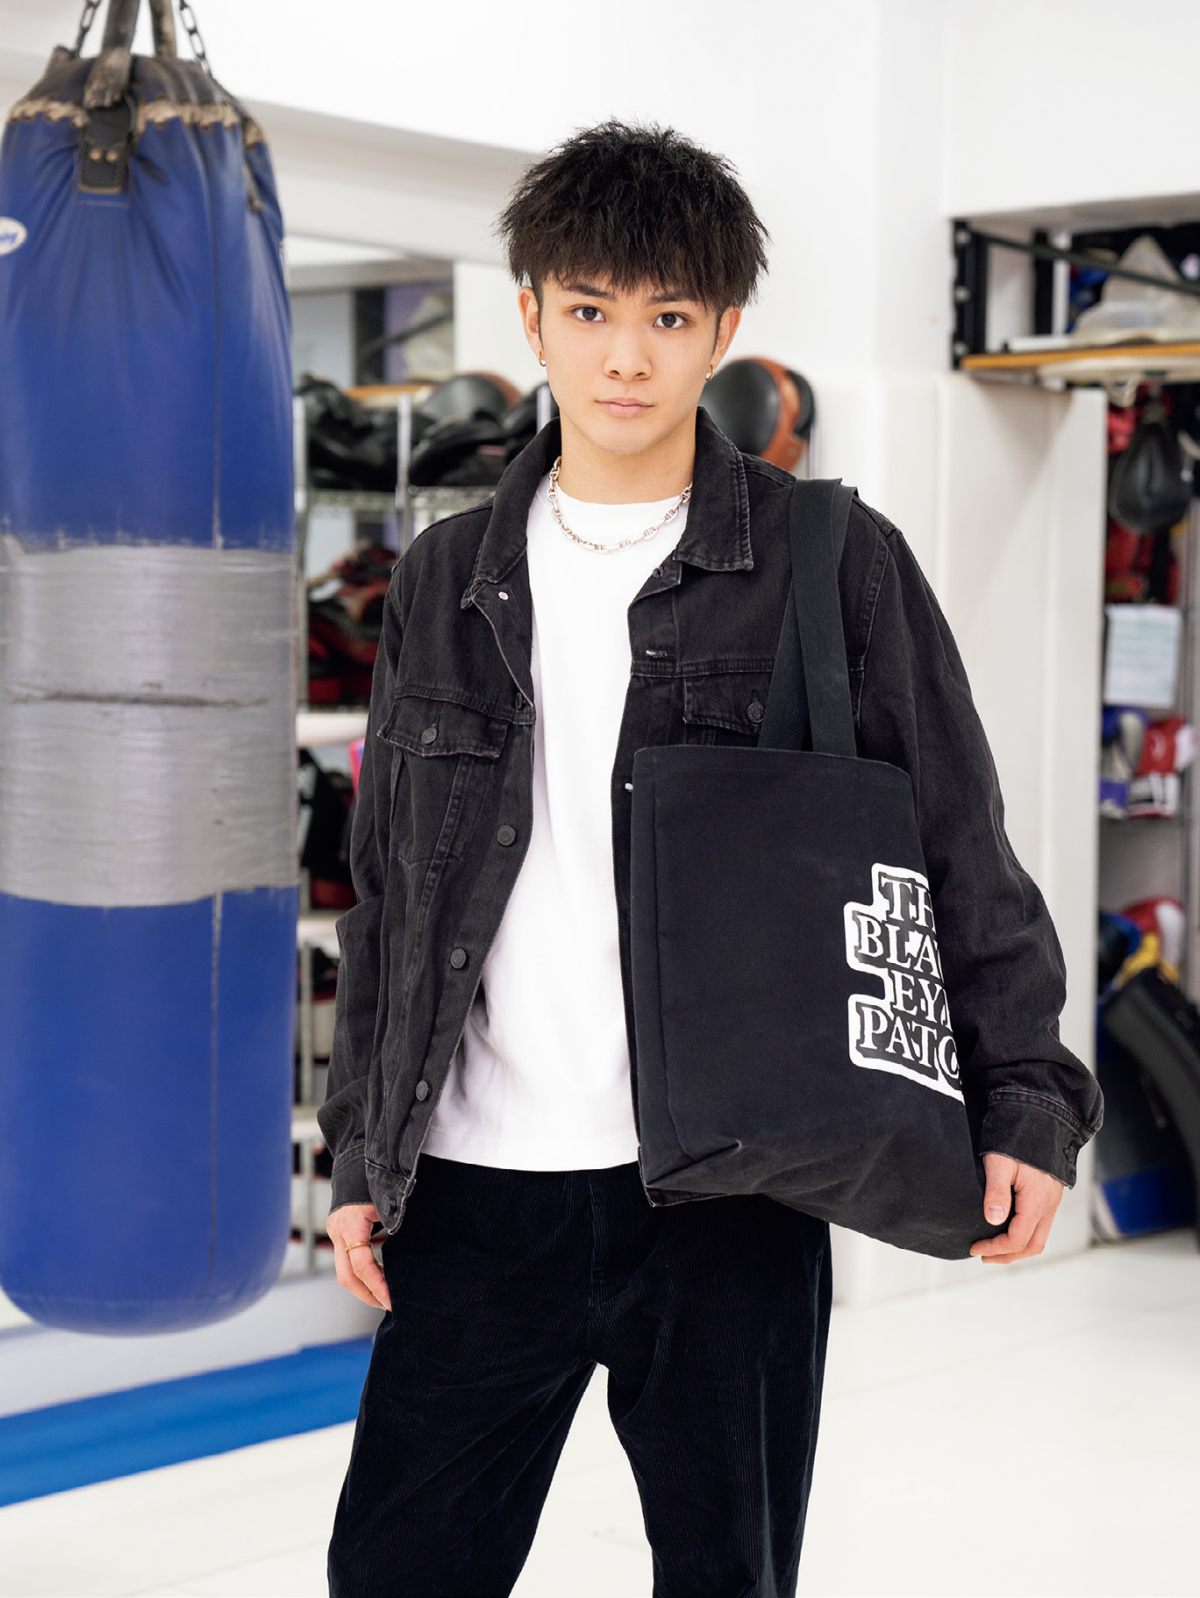 K-1選手玖村将史さんの愛用バッグとその中身